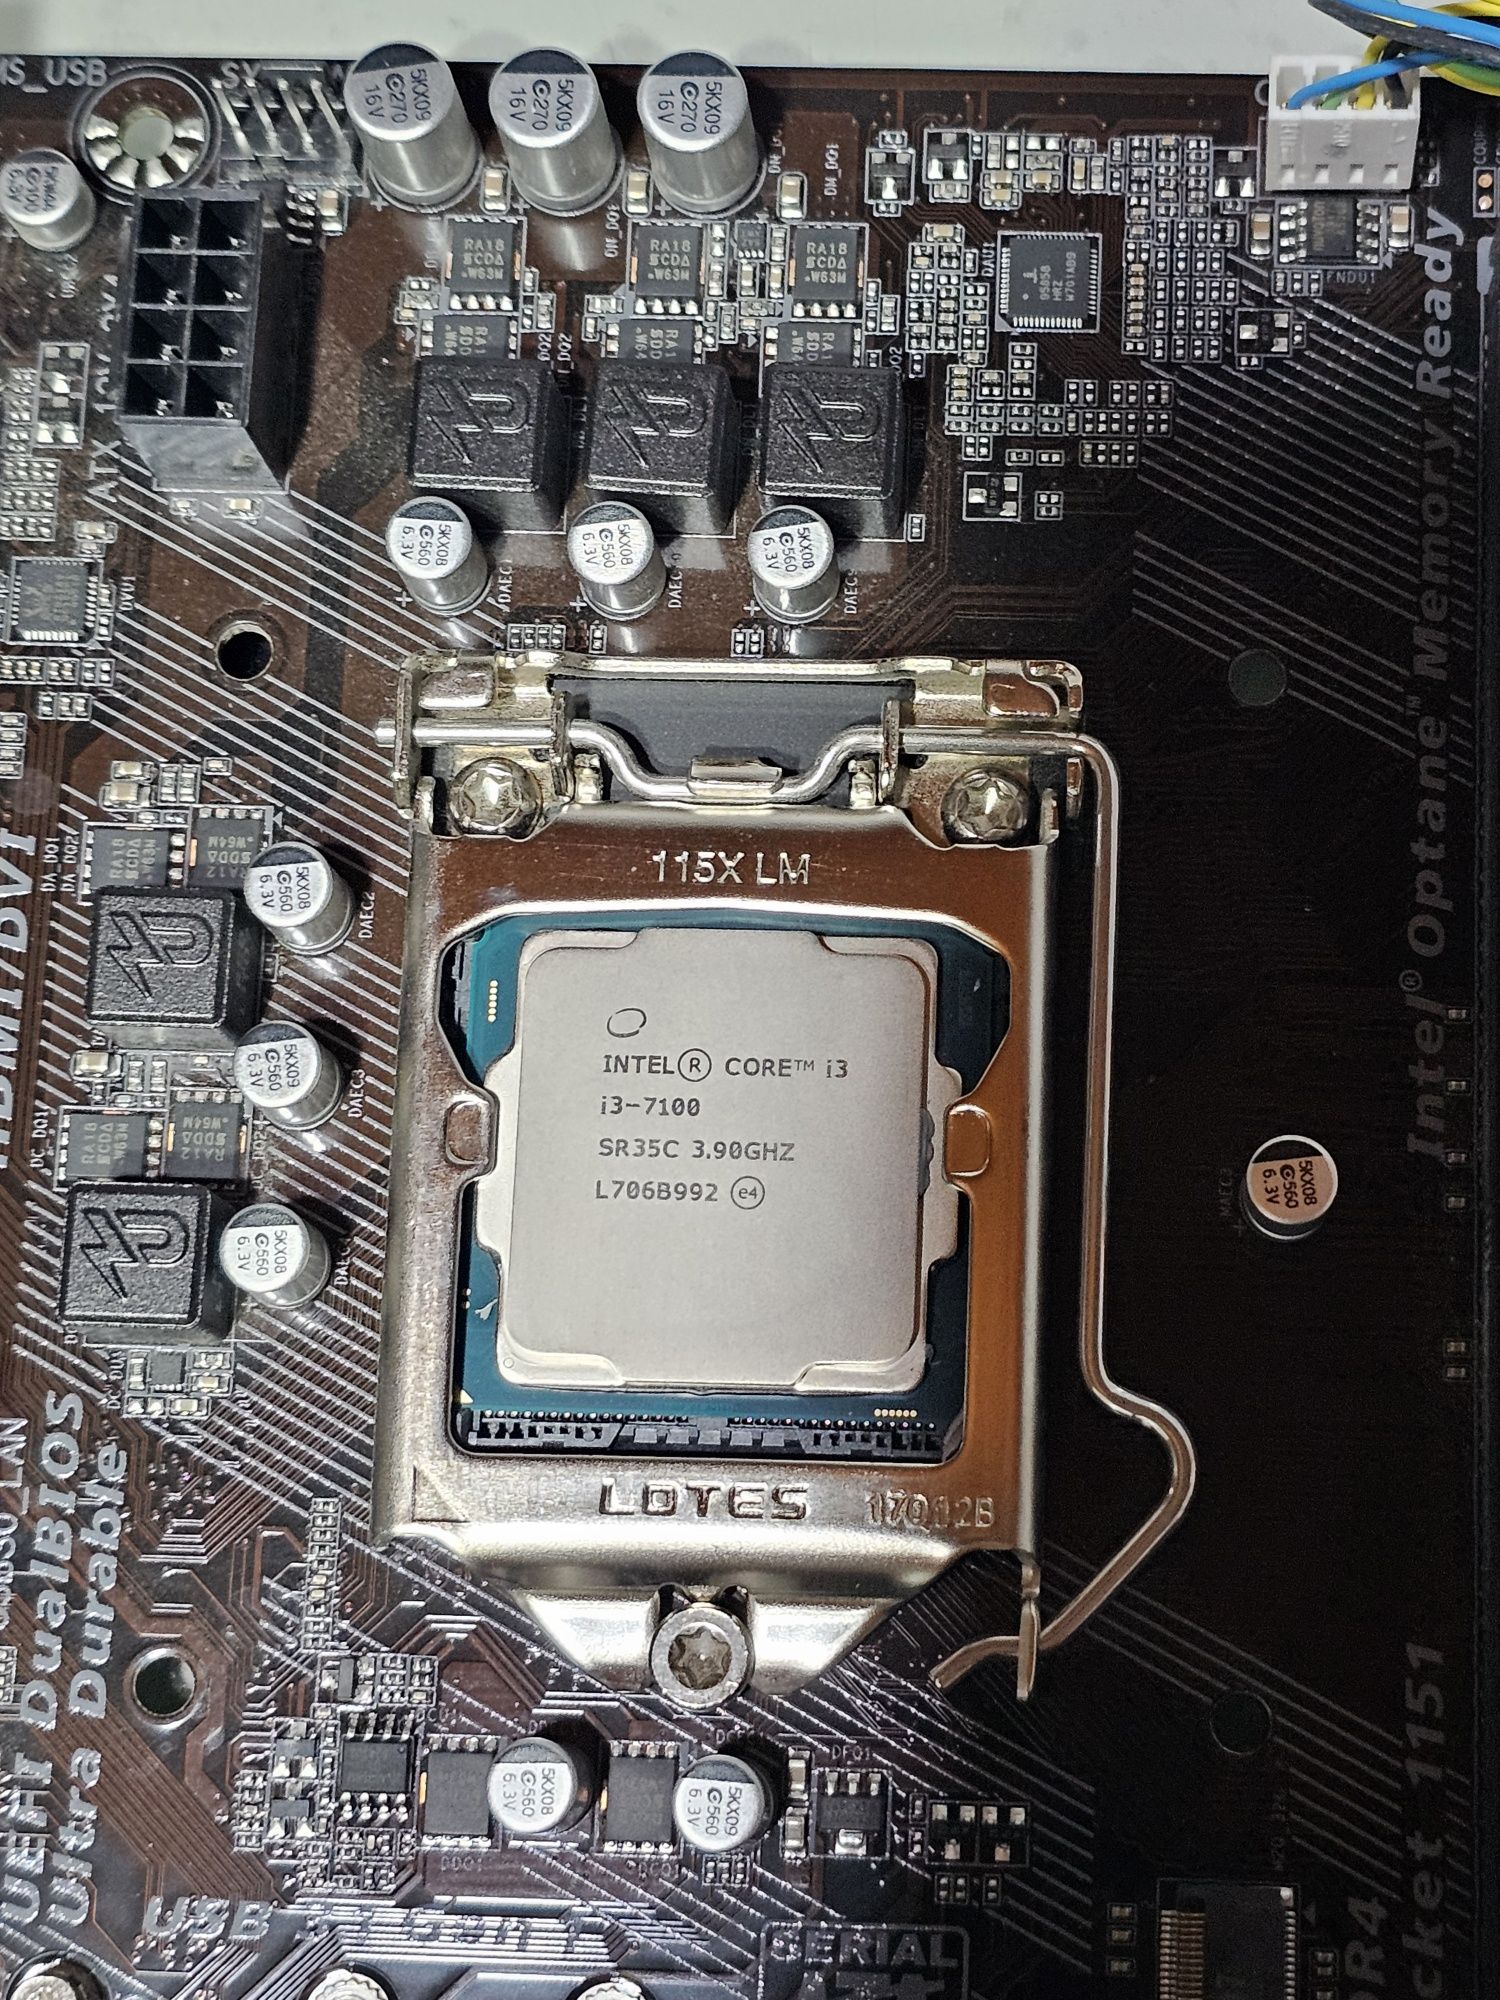 Kit-uri MB MSI/Gigabyte + CPU i3 8100/7100 + RAM 8 GB DDR4 + Cooler